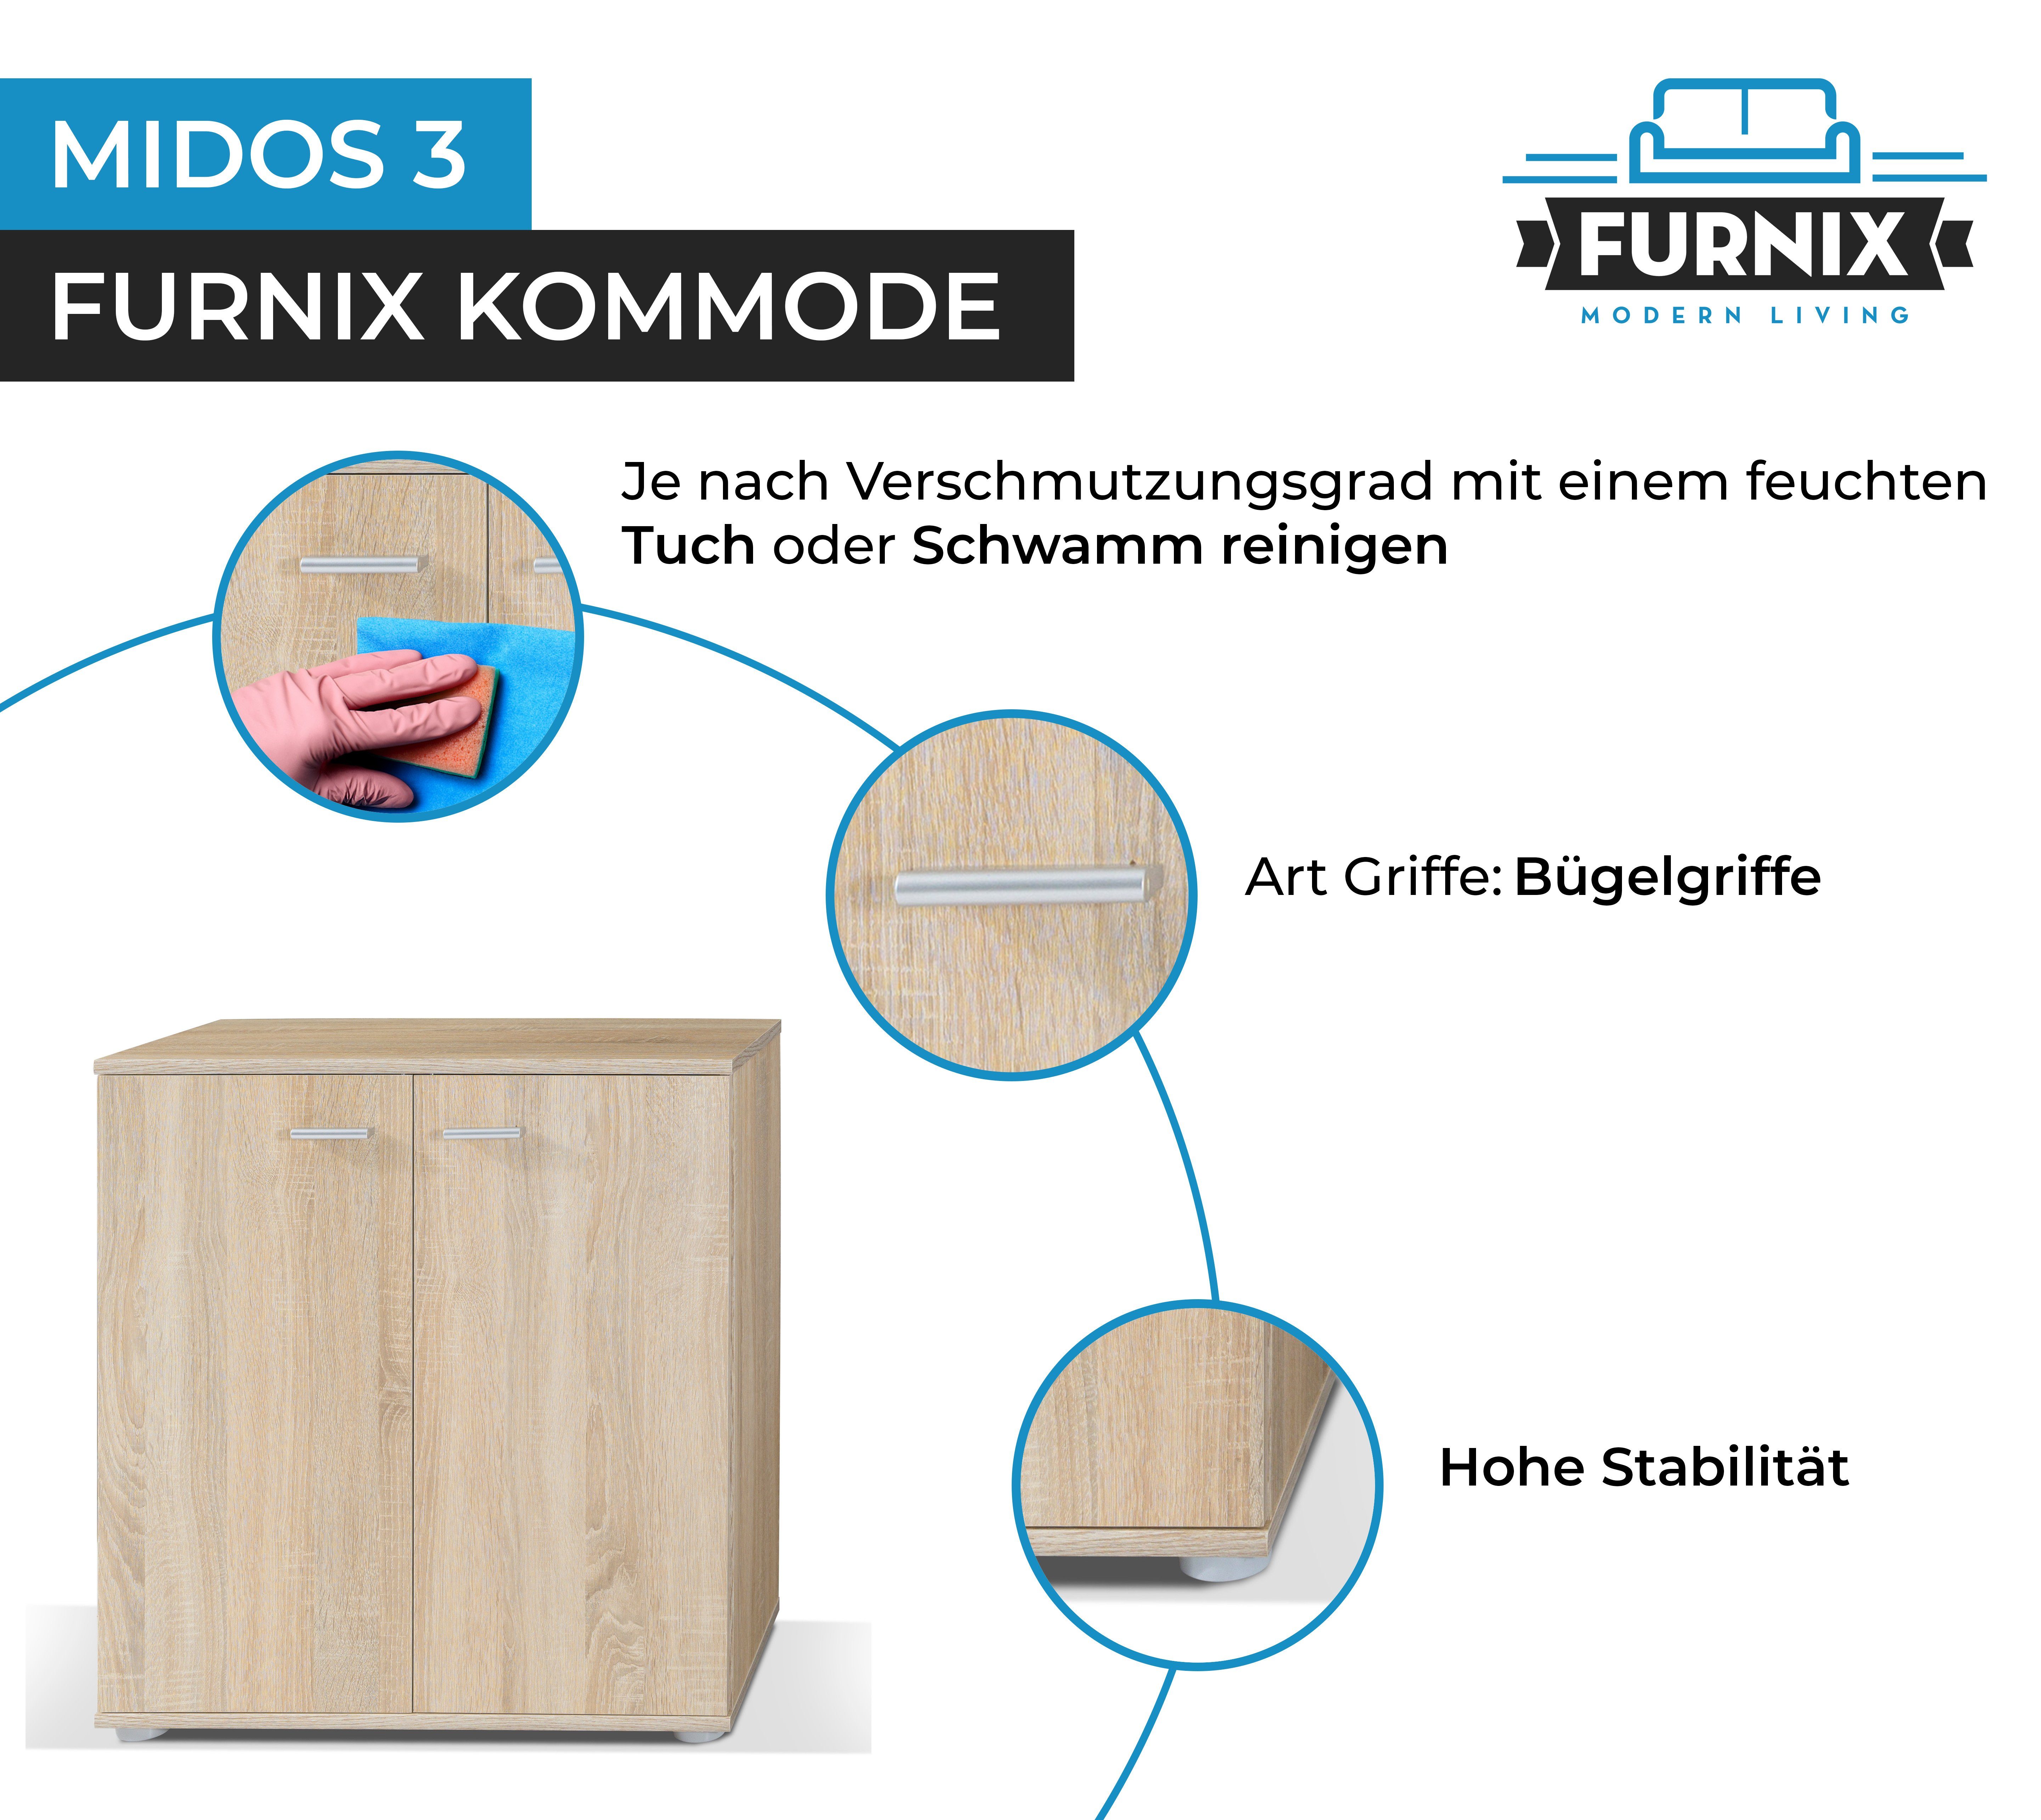 Furnix Kommode Sideboard fürs Wohnzimmer 2 modern Türen mit Midos Sonoma 3